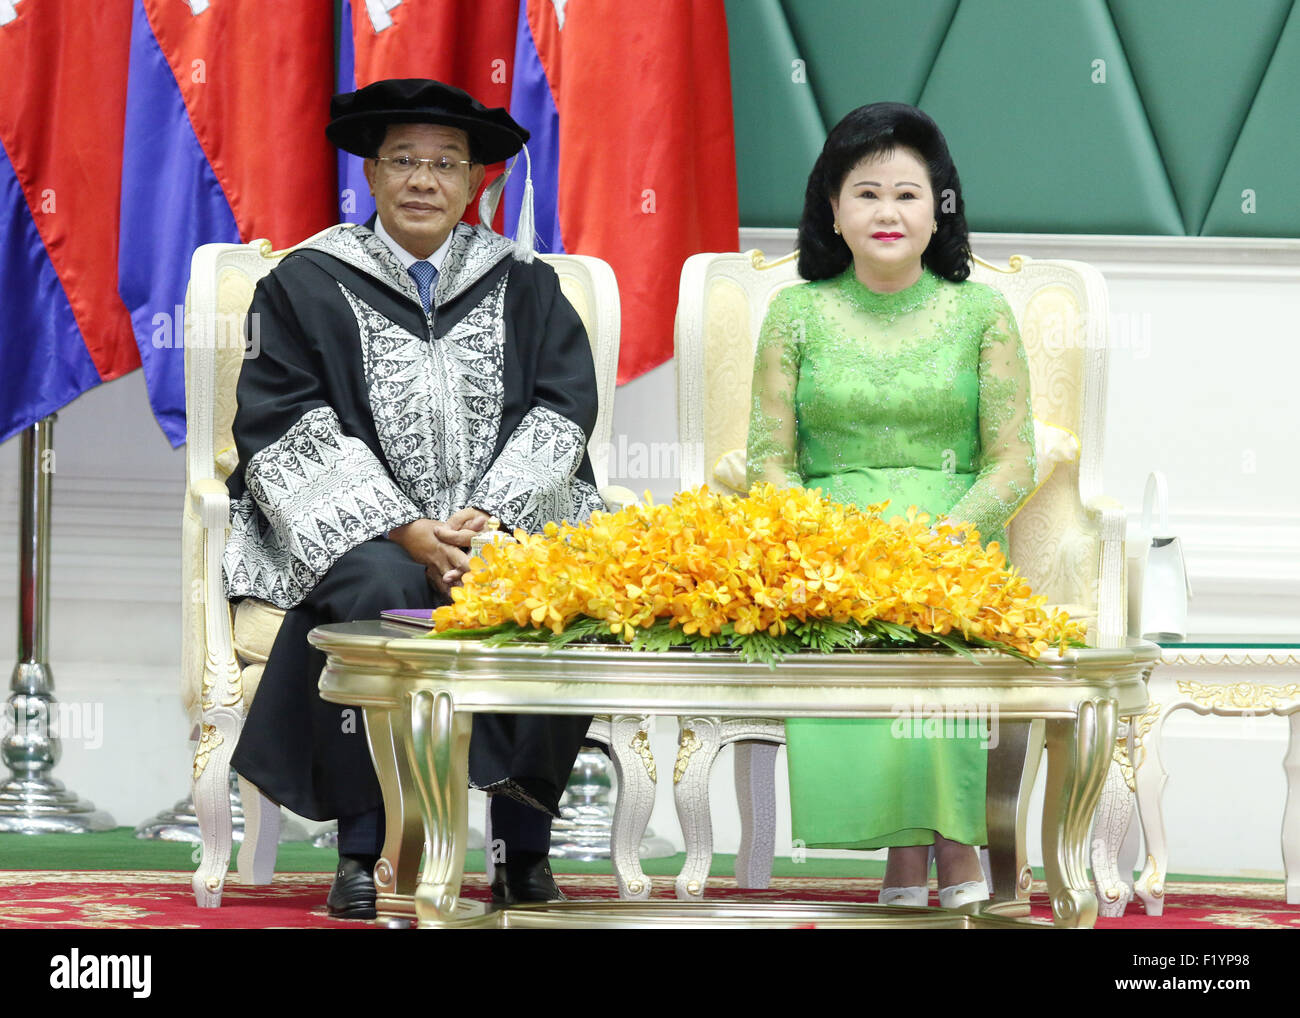 Phnom Penh, Cambodge. Sep 9, 2015. Le Premier ministre cambodgien Hun Sen (L) et son épouse Bun Rany assister à une cérémonie à Phnom Penh, Cambodge, 9 septembre 2015. La prestigieuse Université Limkokwing la Malaisie décerné Hun Sen le doctorat honorifique du leadership transformationnel le mercredi lors d'une cérémonie tenue au Palais de la paix dans la capitale cambodgienne. © Sovannara/Xinhua/Alamy Live News Banque D'Images